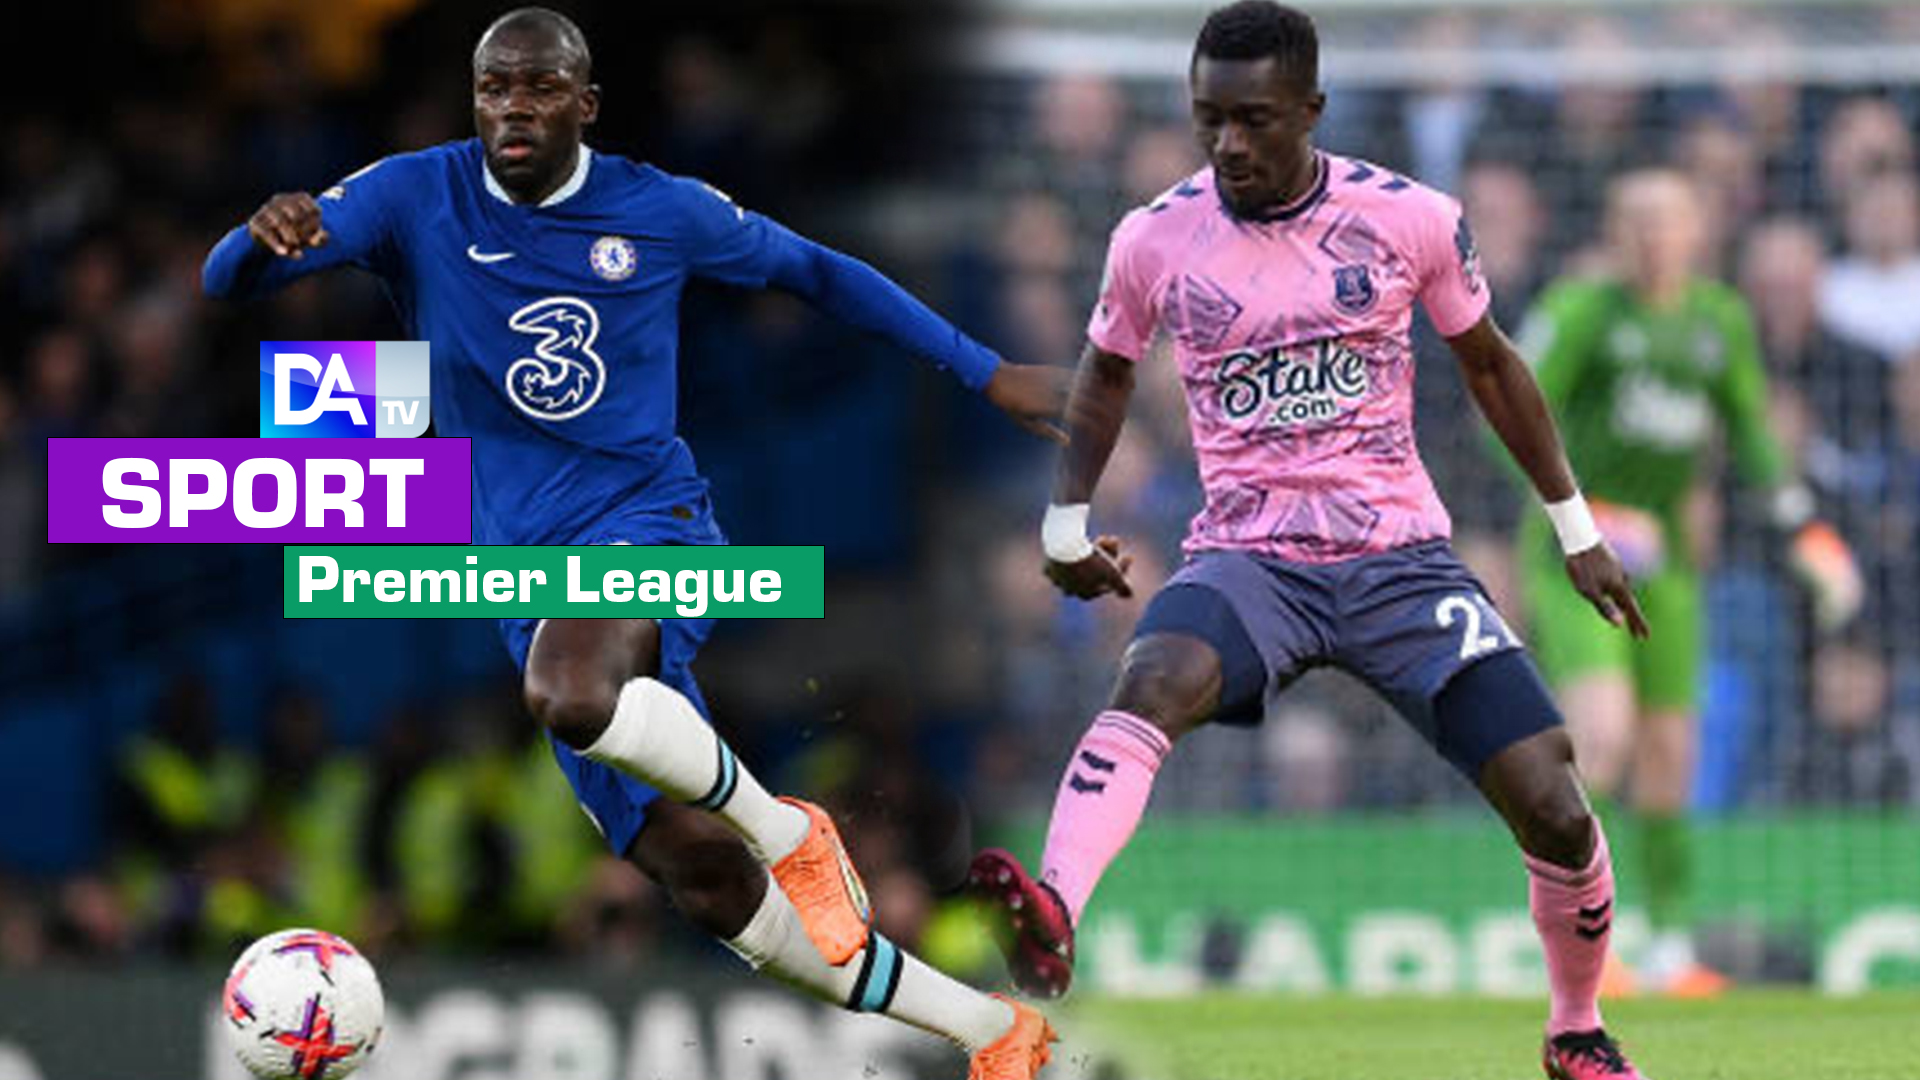 Premier League : Duel très serré entre Chelsea de Kalidou Koulibaly et Everton de Gana Guèye (2-2)